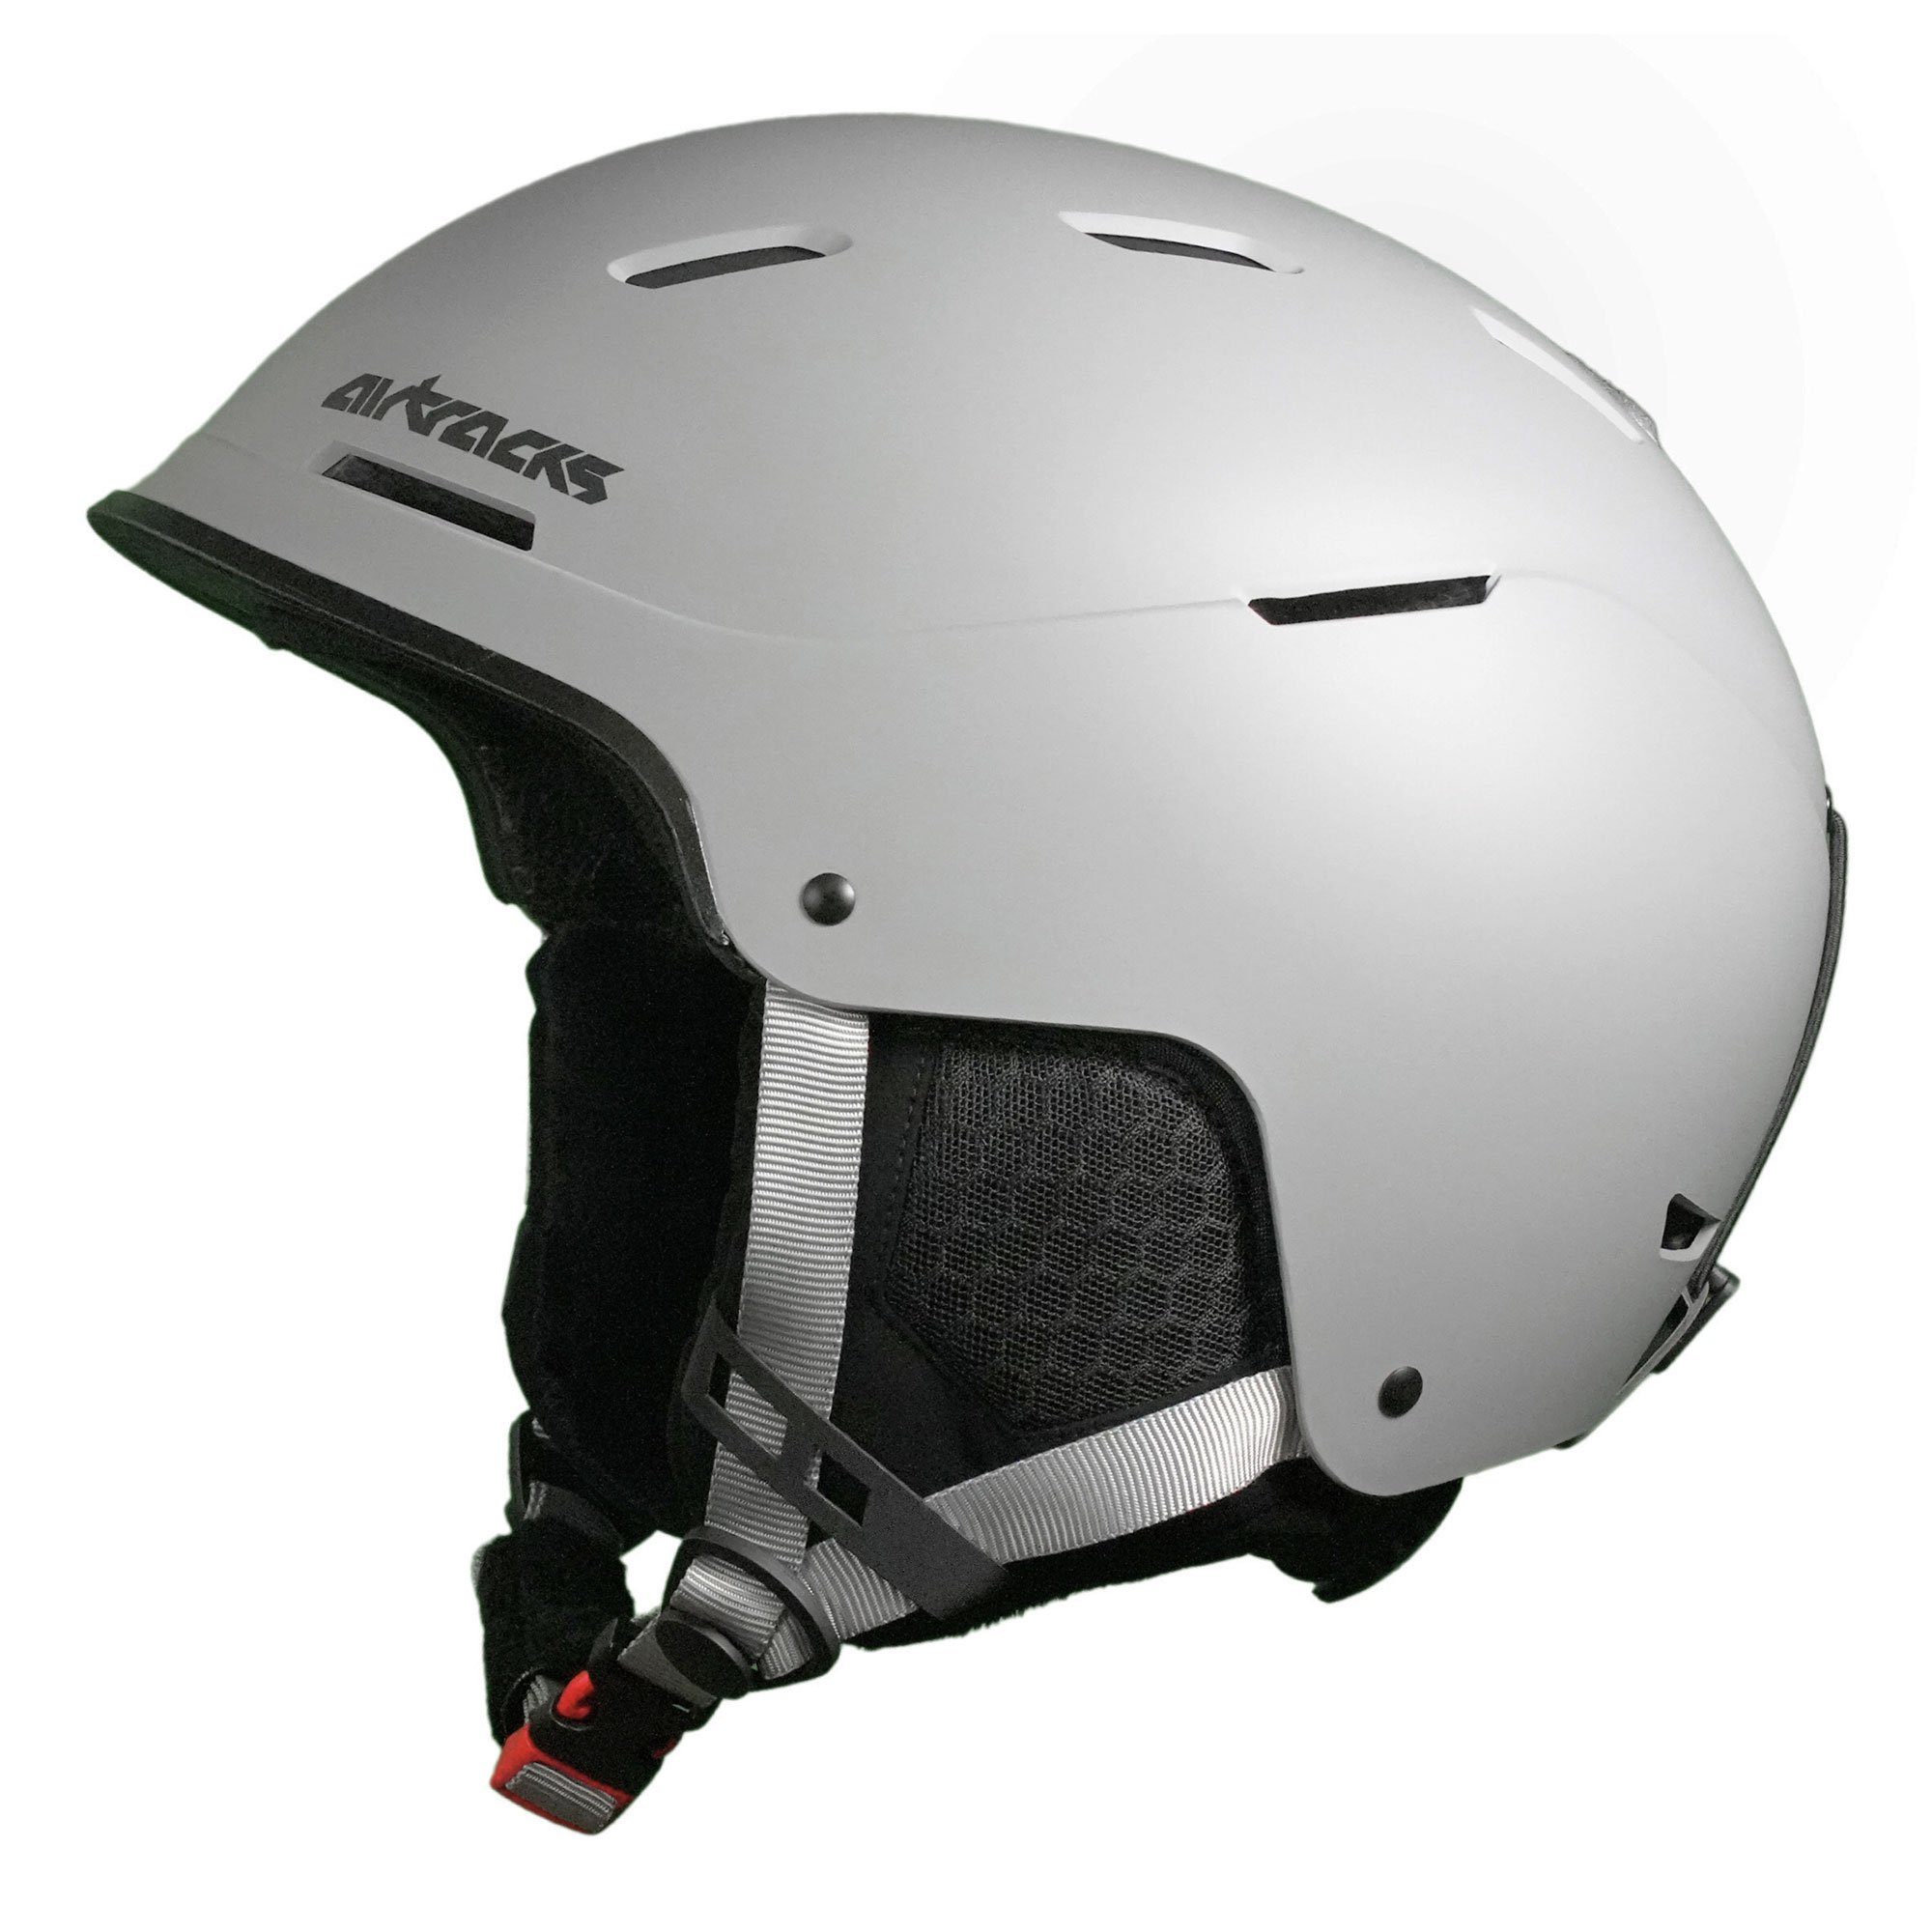 Airtracks Skihelm Ski - Snowboard Helm STRONG SP-S210 (für Herren und Damen mit Ventilationssystem & stufenloser Anpassung), - Farbe Matt » S- 50-54cm. M - 54-58cm, L- 58-61cm « grau